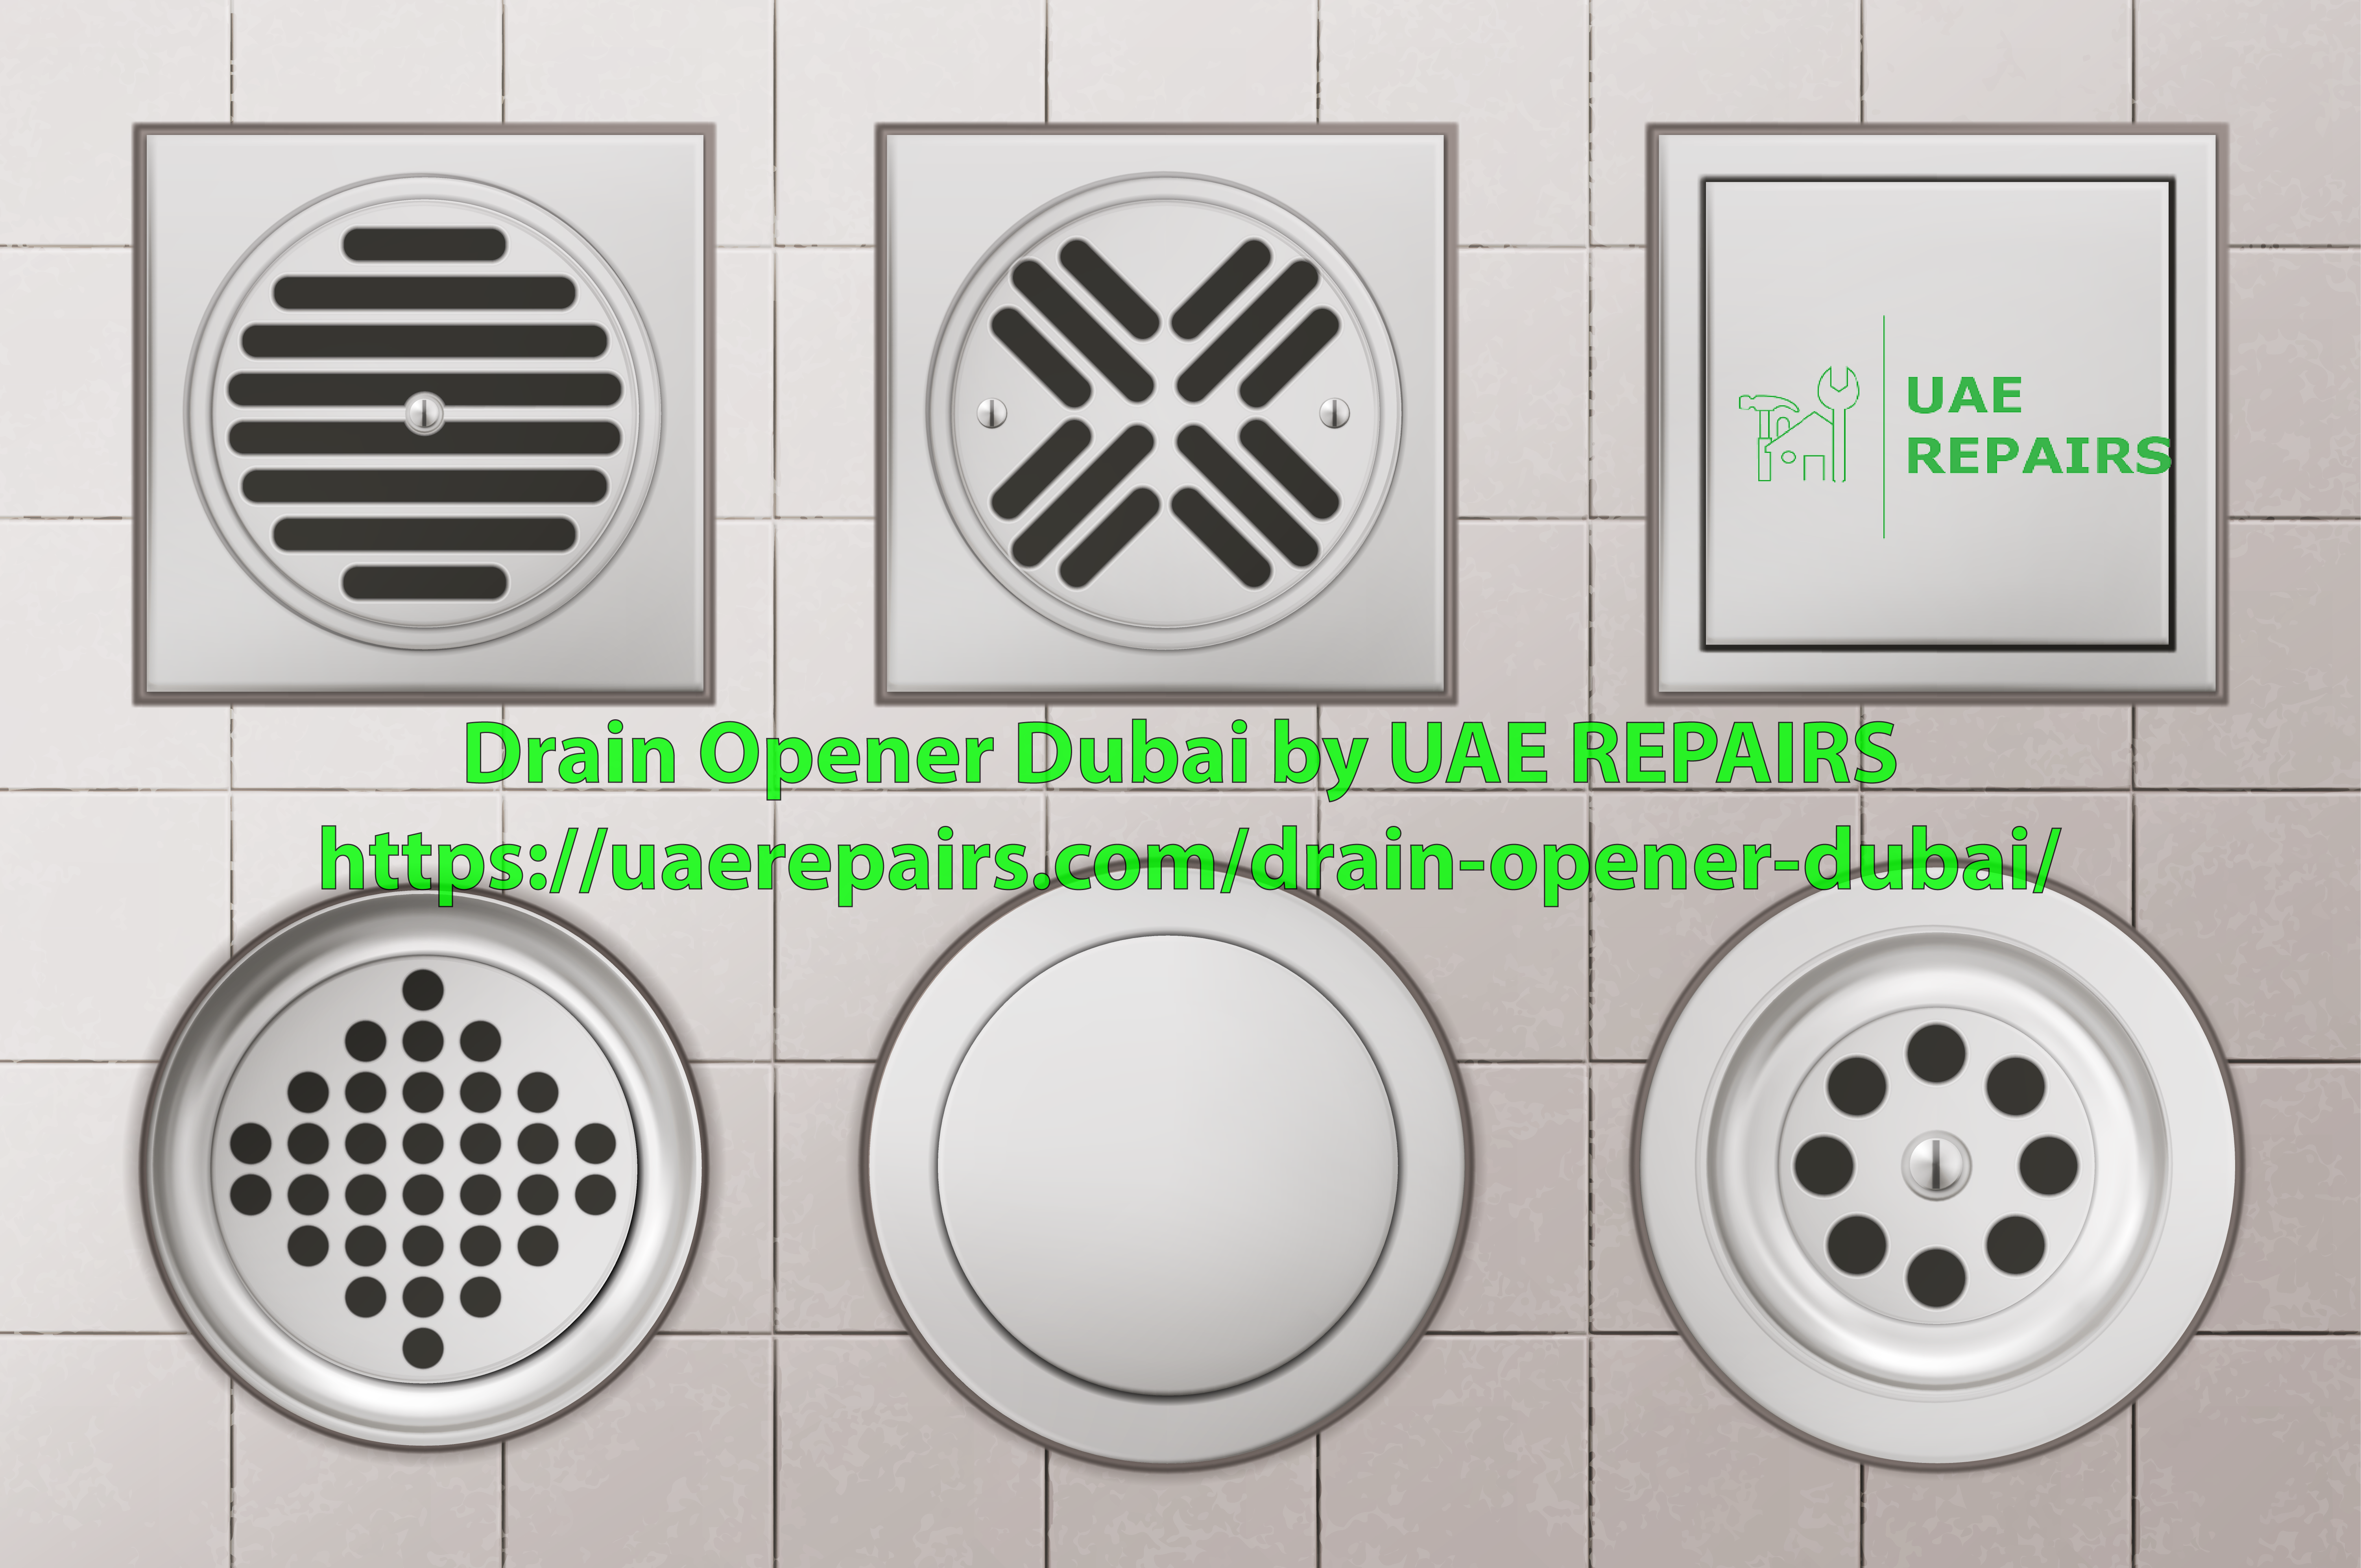 Drain opener Dubai by Uae Repairs